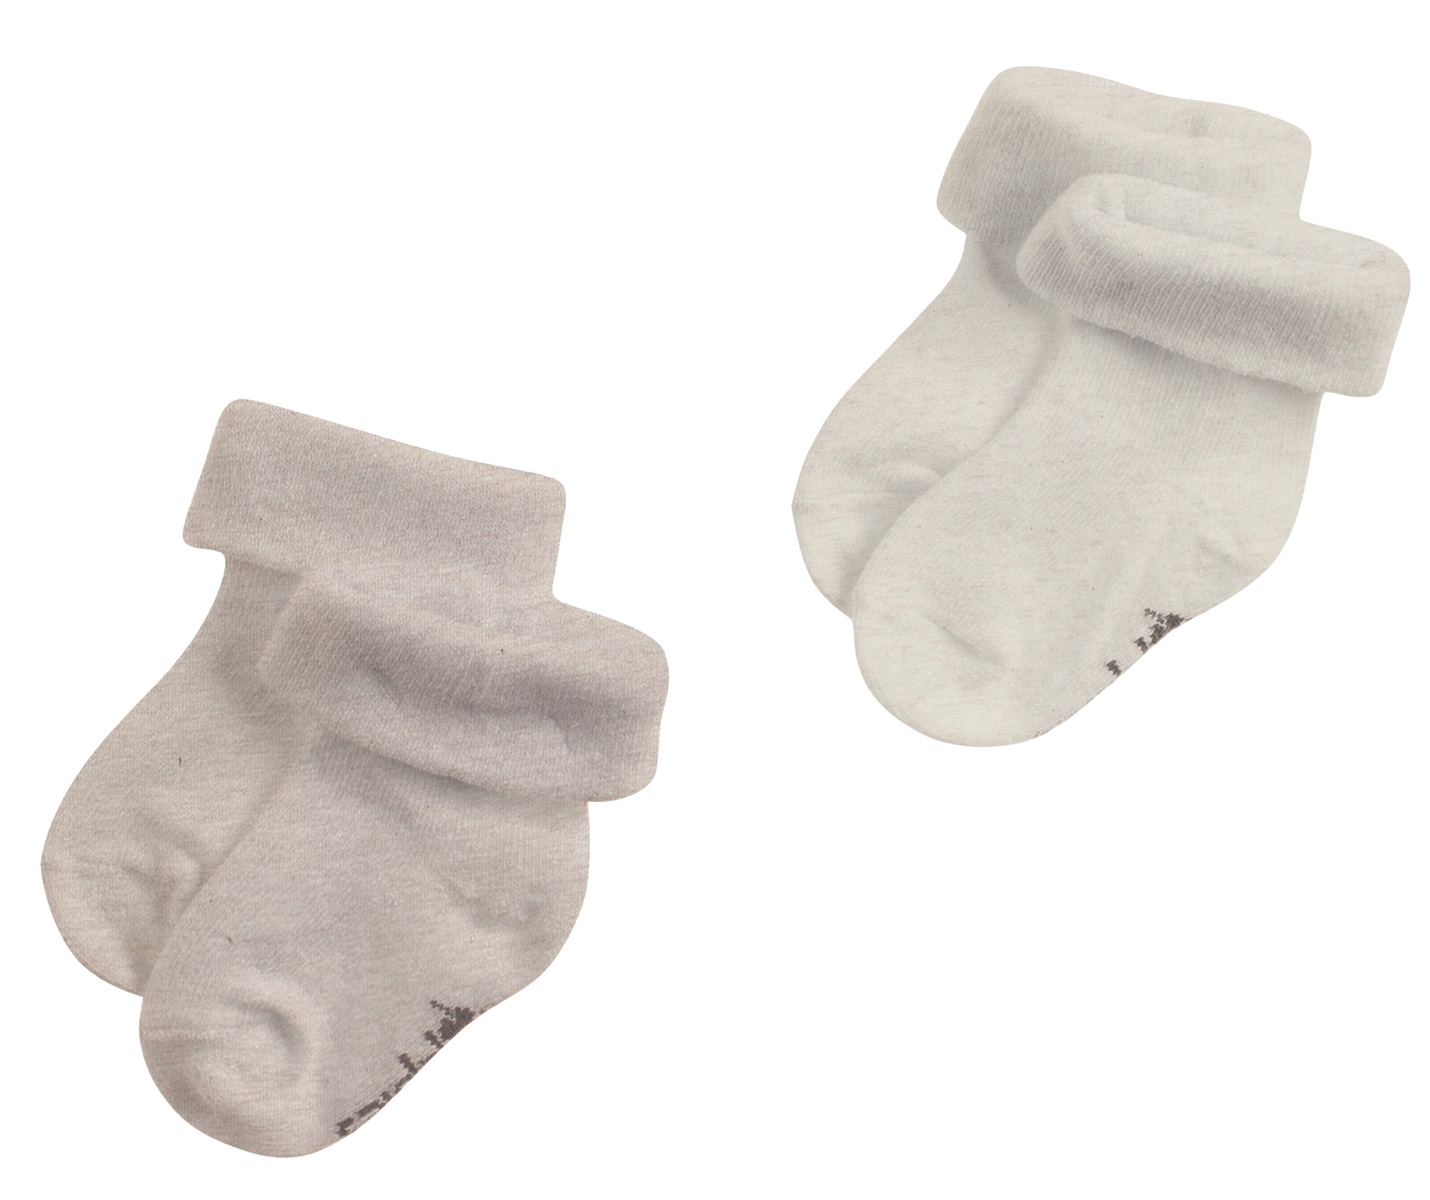 Chaussettes de bébé en coton biologique sans étiquette chaussettes